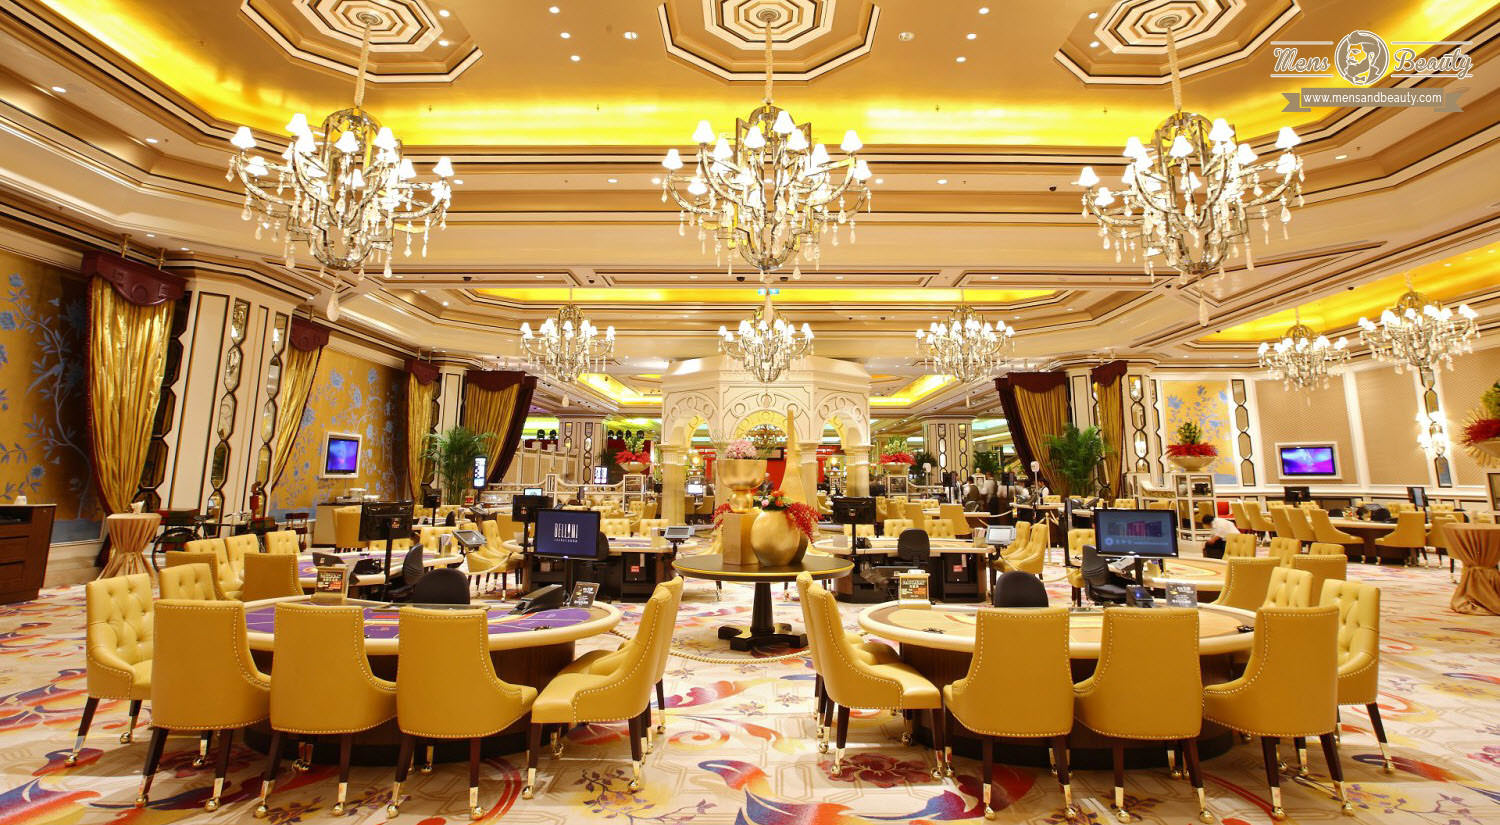 mejores casinos famosos mundo hotel casino the venetian macao